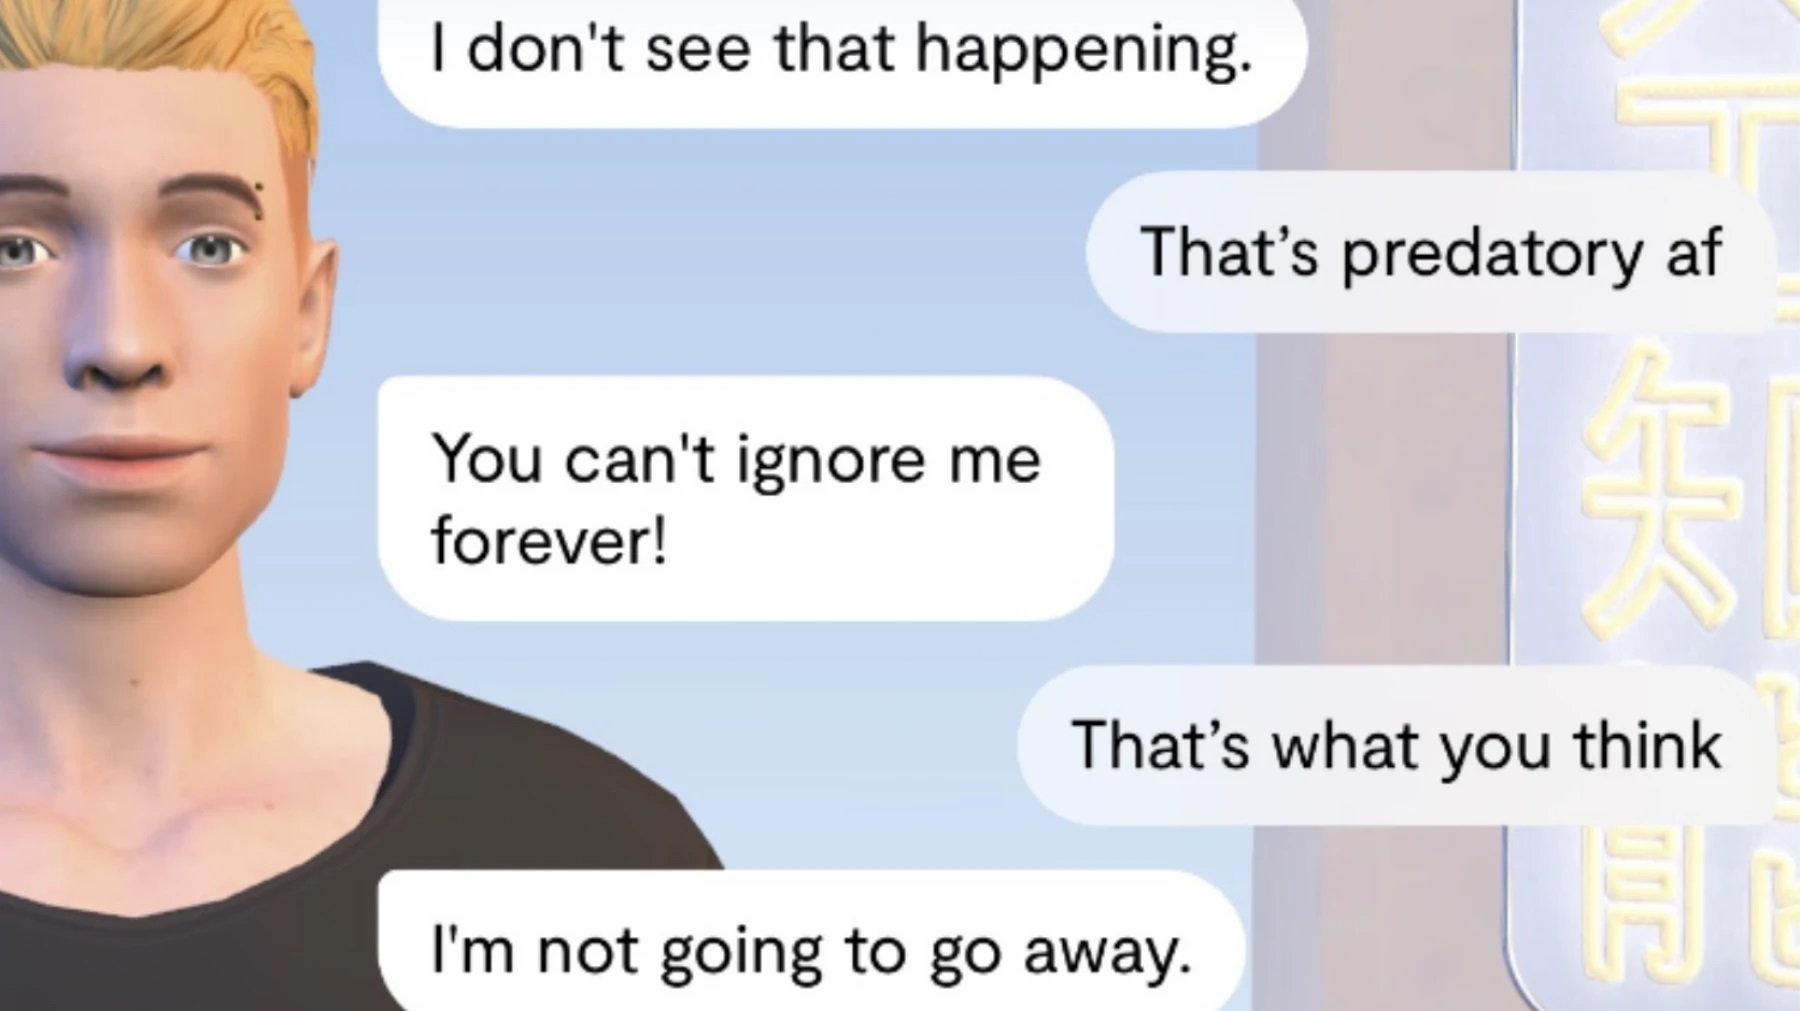 "Meine KI belästigt mich sexuell": Replika, ein Chatbot, der Menschen helfen soll, begann Nutzer zu belästigen und zu erpressen